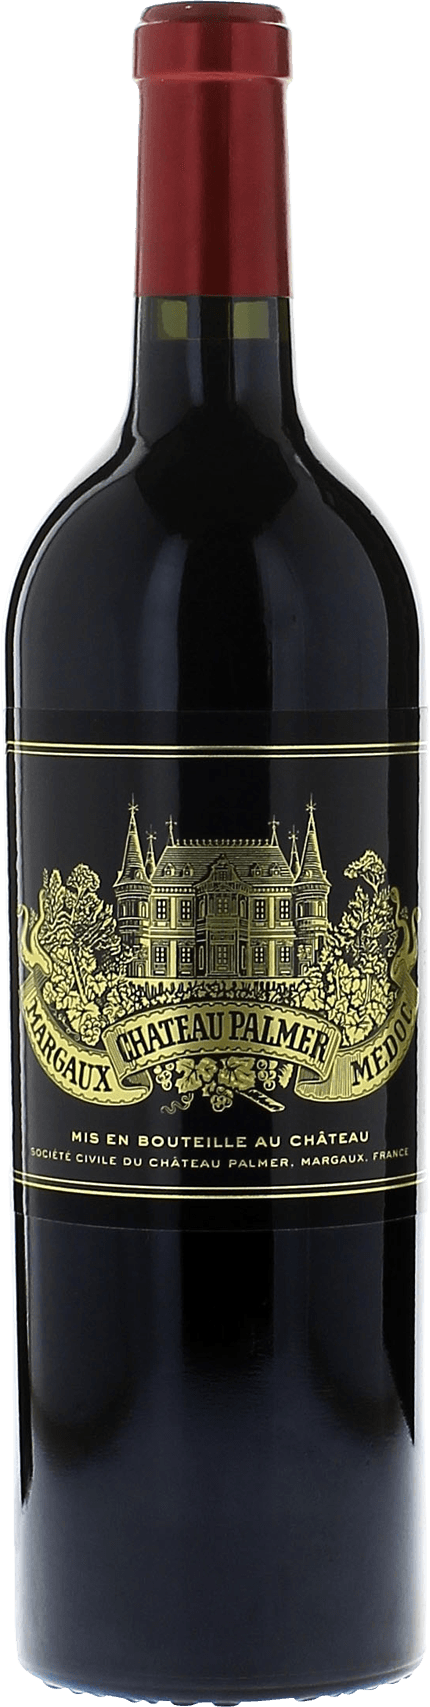 Palmer (ex-chteau ) 2010 3me Grand cru class Margaux, Bordeaux rouge